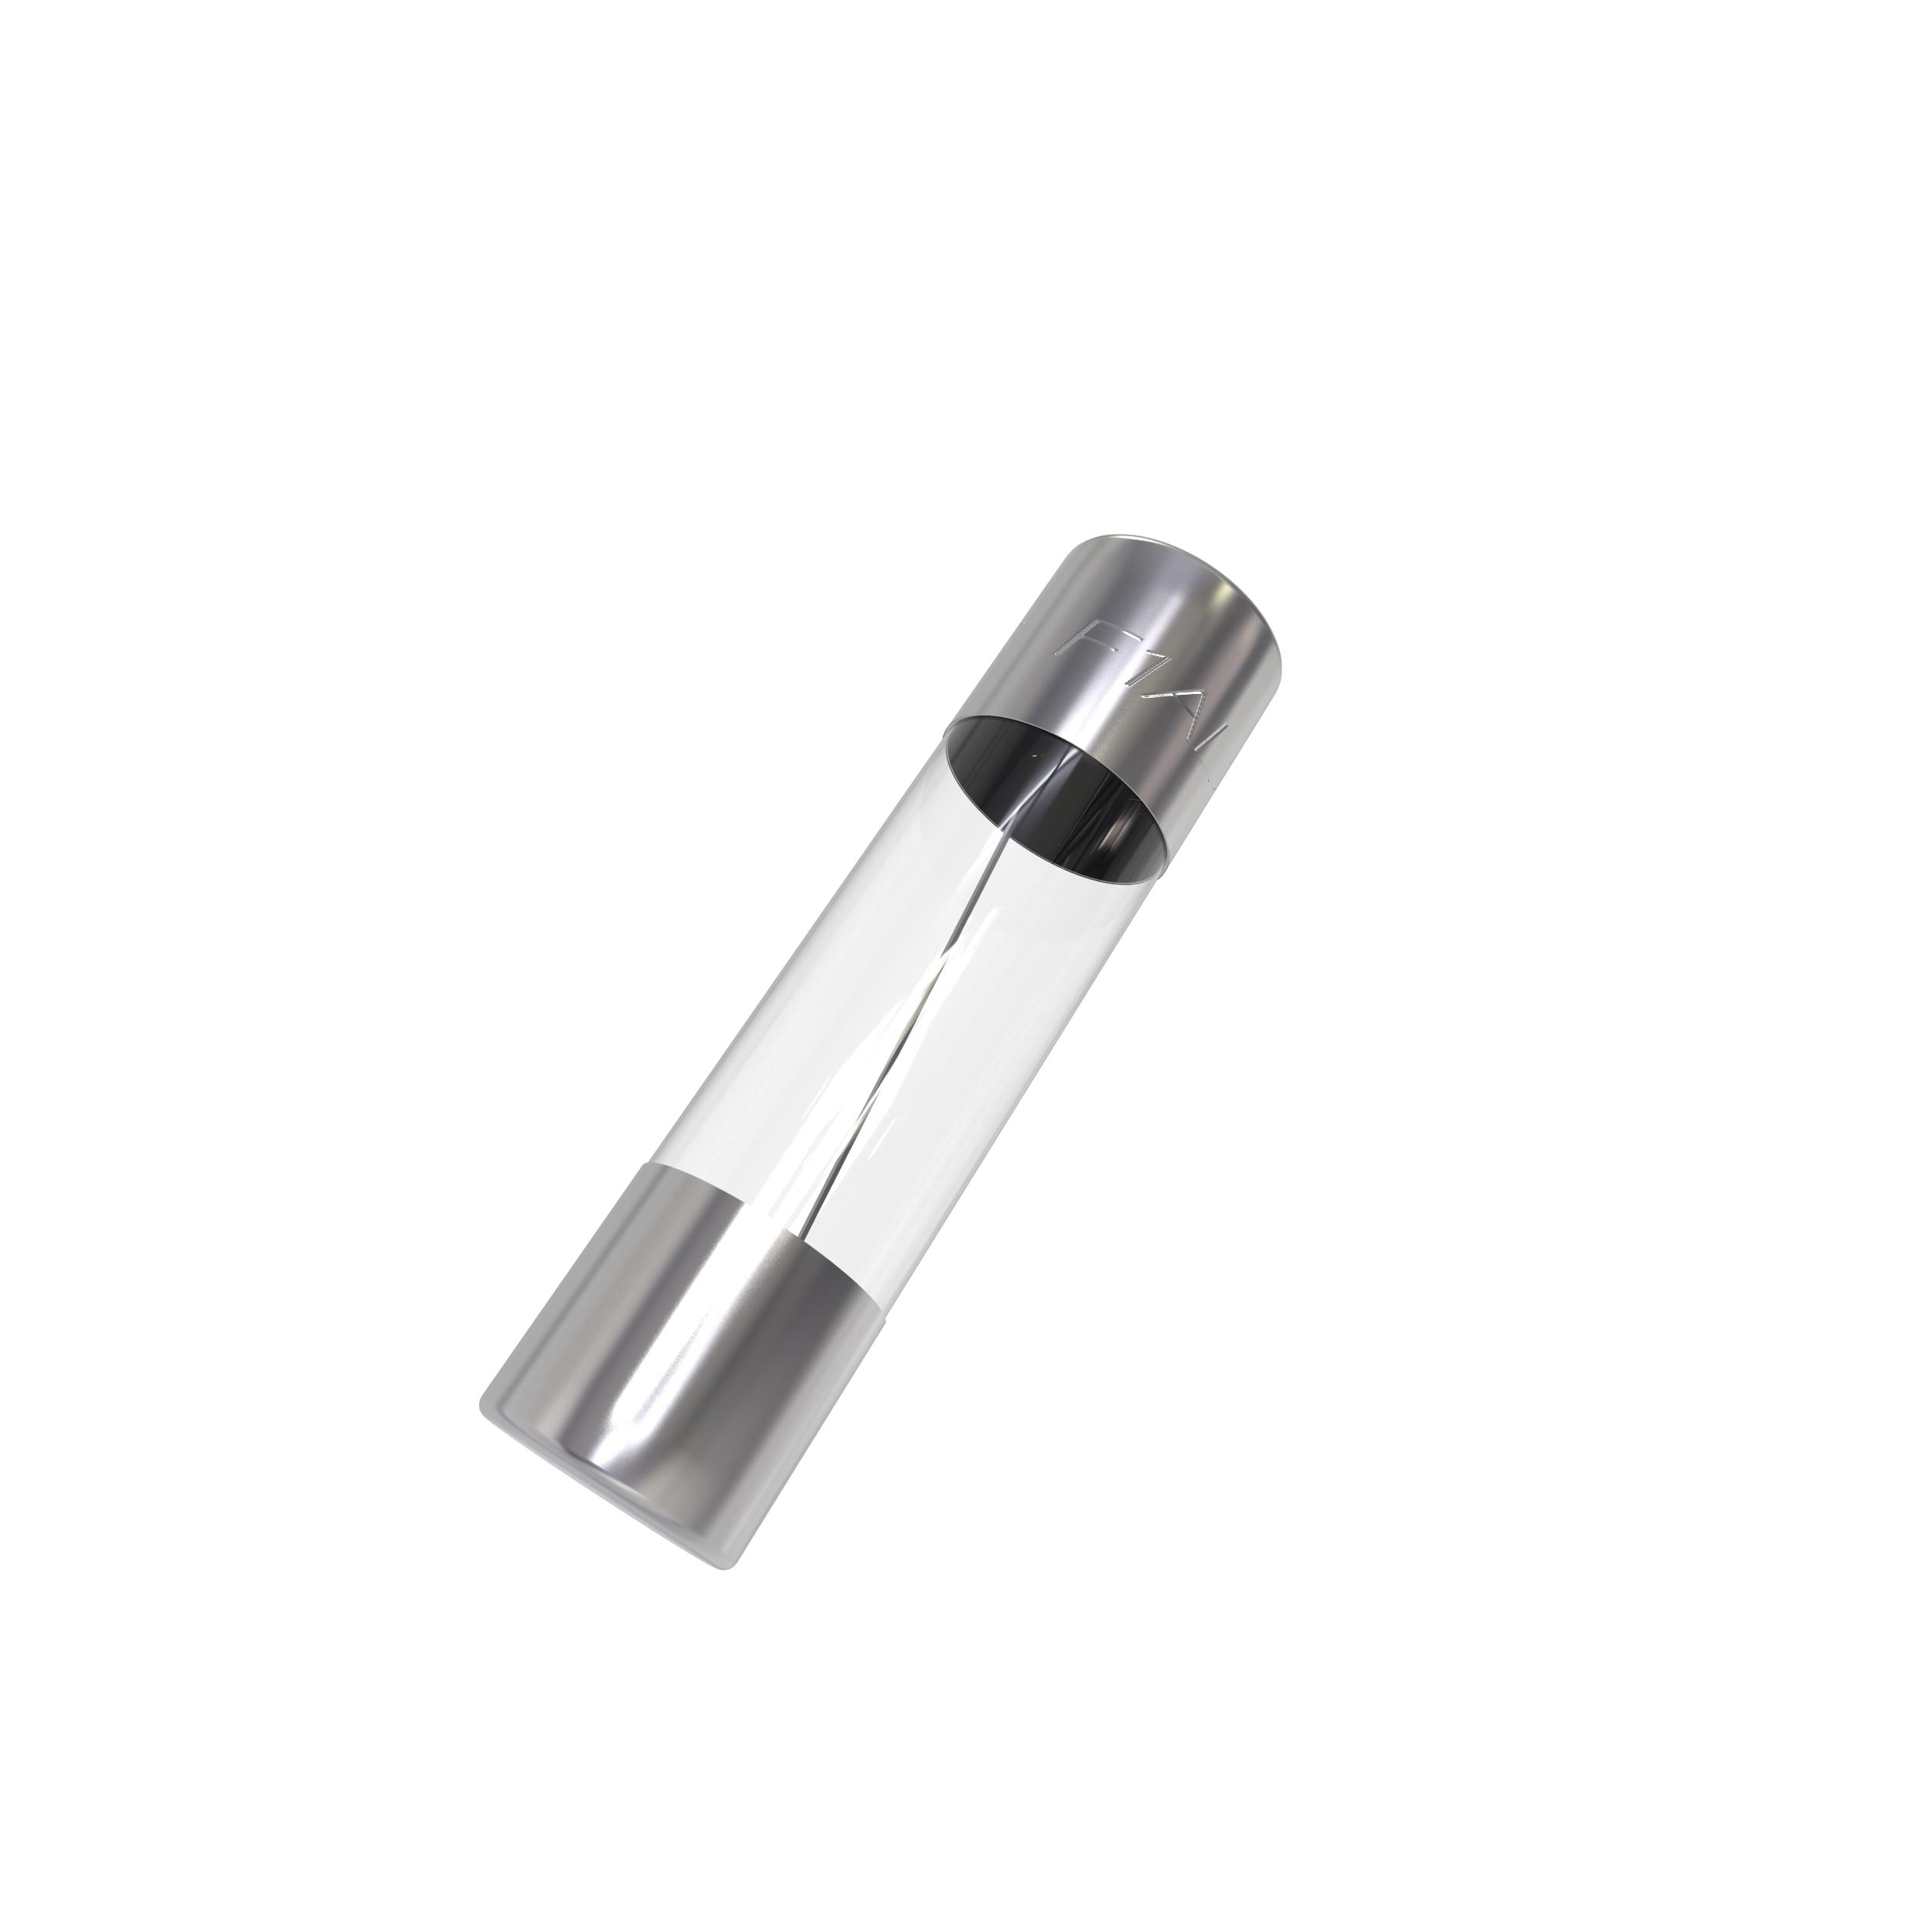 100stk 5x20mm Sortiment Feinsicherungen Glassicherungen Box Satz 0,2A-15A 